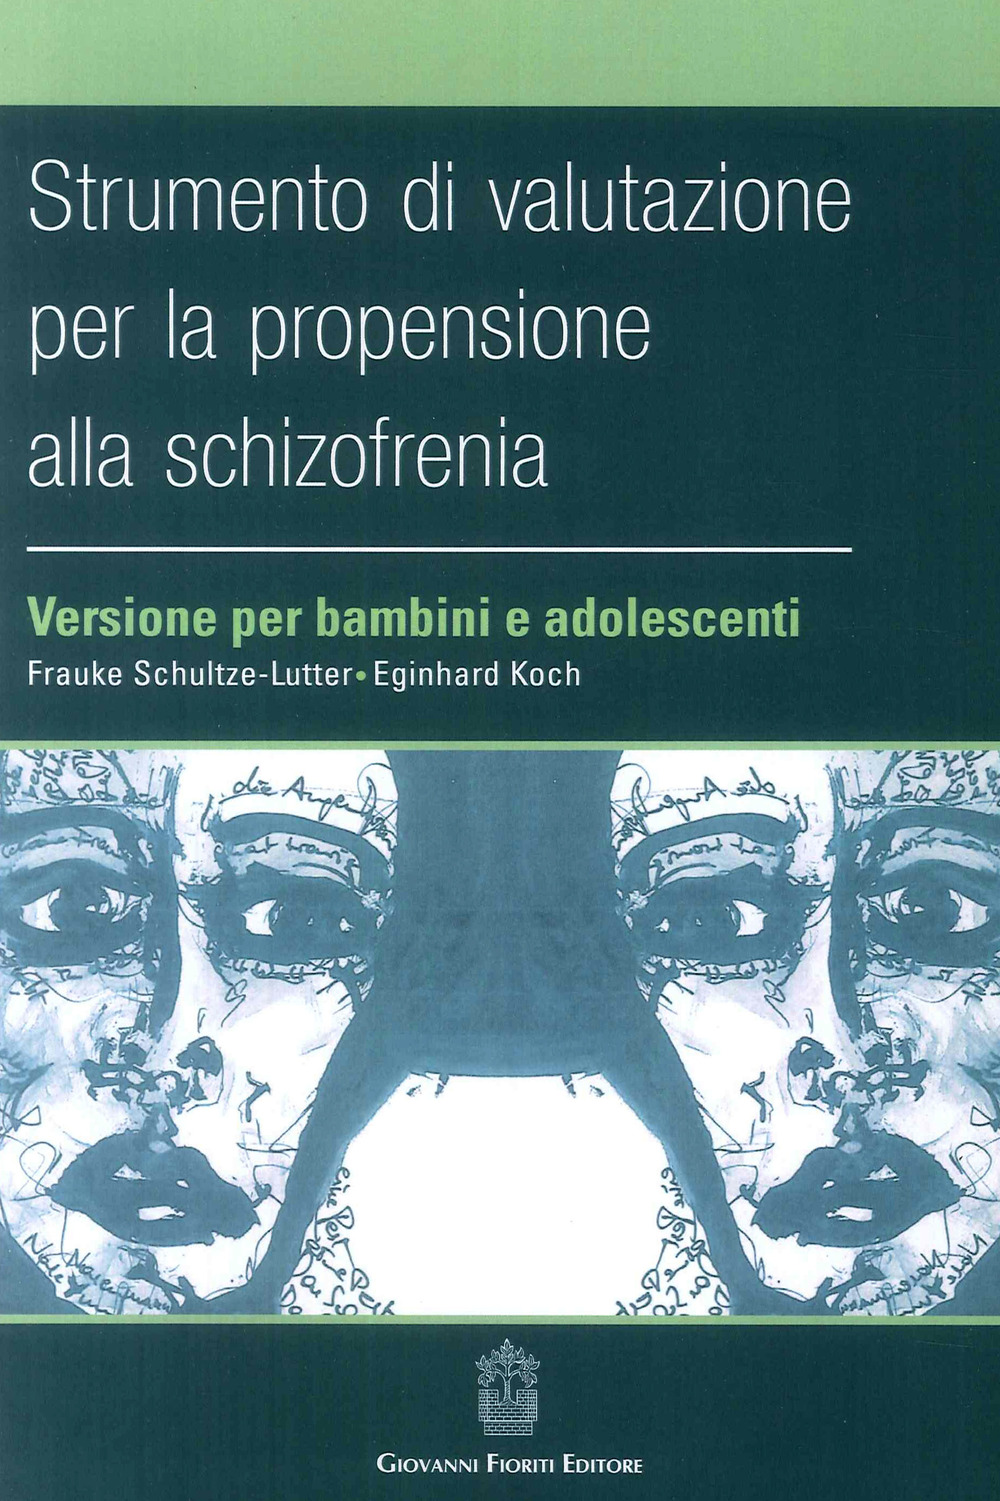 Strumento di valutazione per la propensione alla schizofrenia: versione per bambini e adolescenti